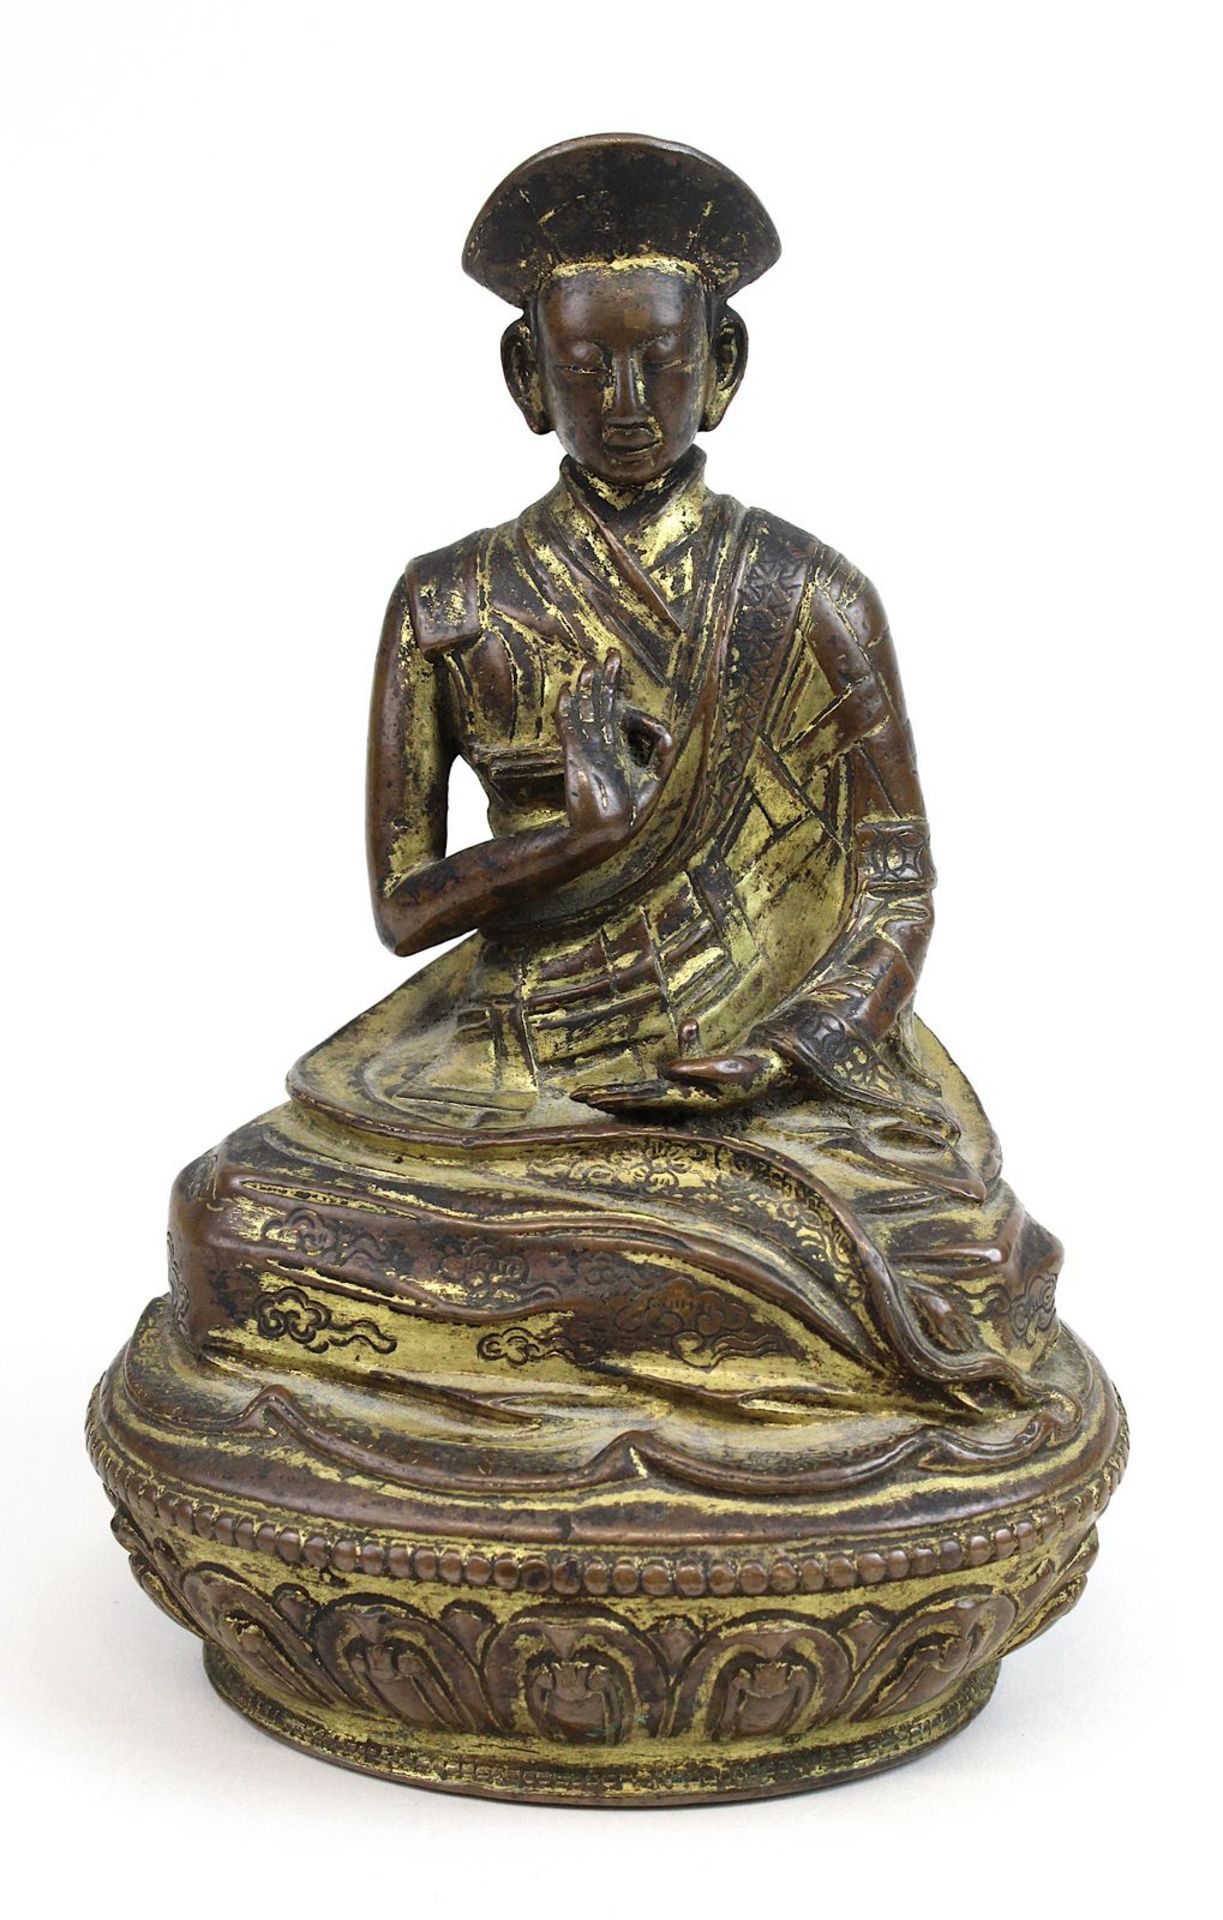 Lama aus Bronze, Himalaya 17 Jh., nach Vorbild eines Heiligen aus dem 11 Jh., Bronze mit Resten